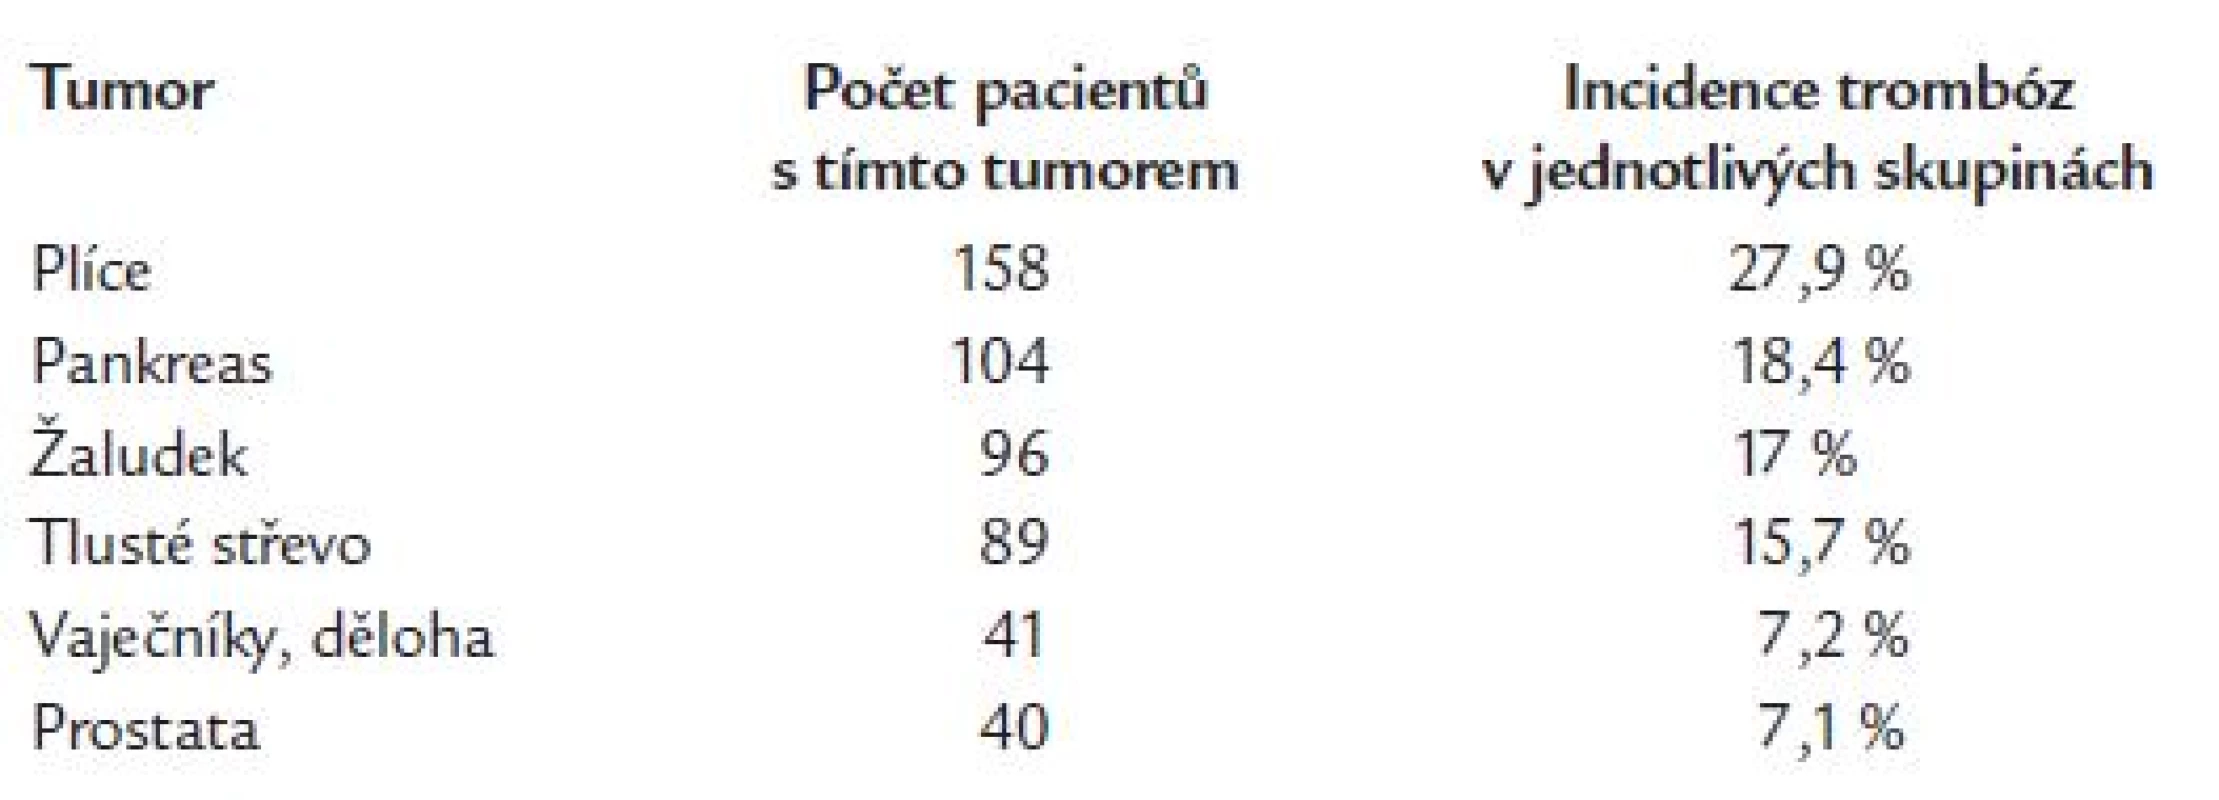 Incidence trombóz u pacientů s vybranými maligními tumory (Hiller E 2000).